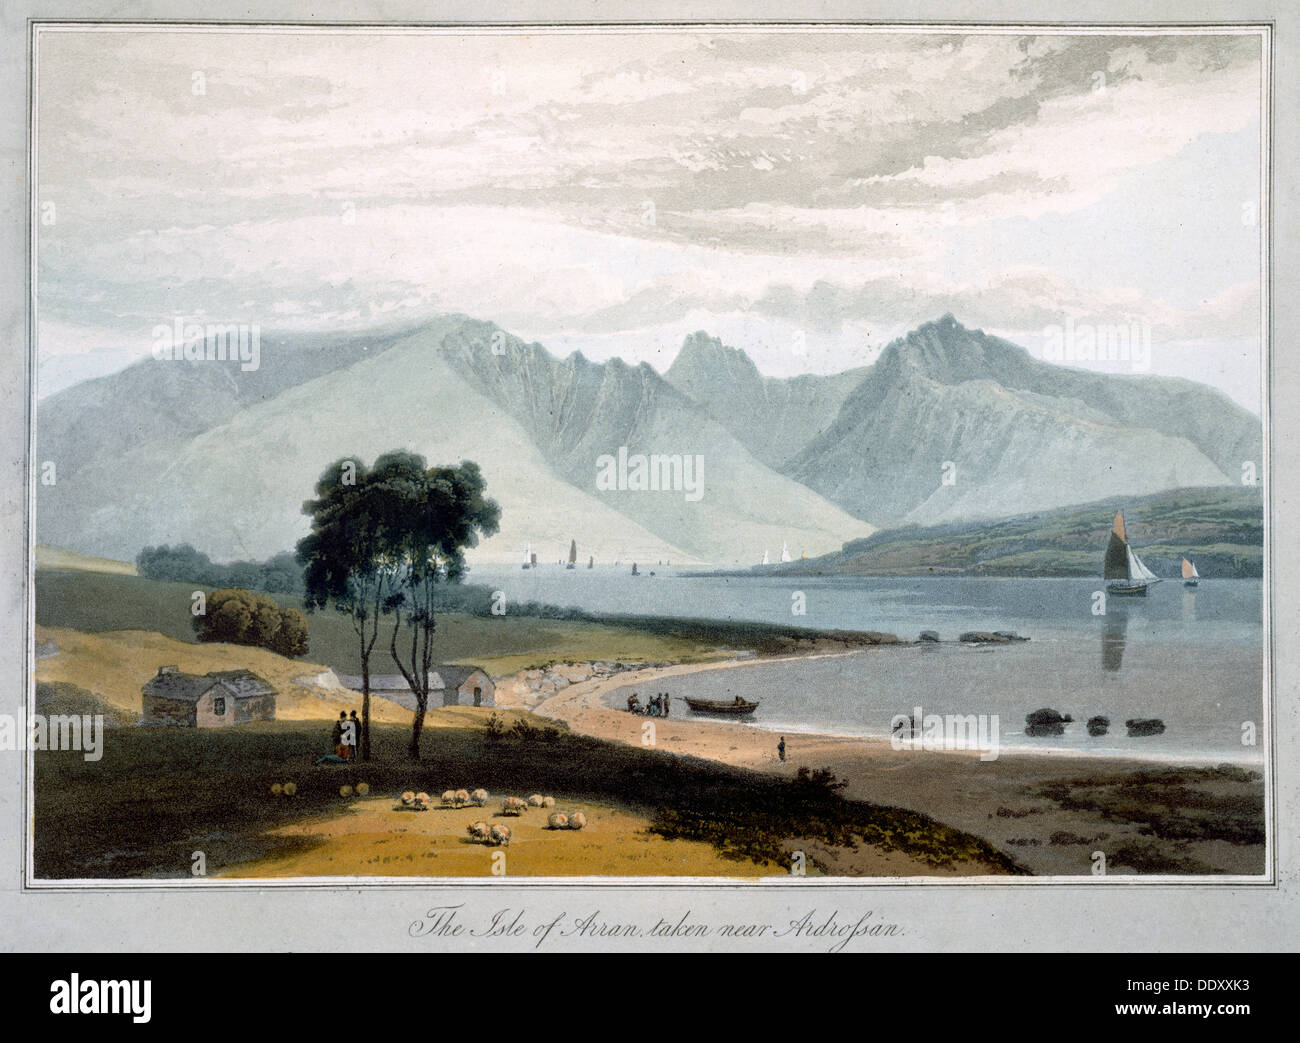 "L'isola di Arran presi nei pressi di Ardrossan', Scozia, 1817. Artista: William Daniell Foto Stock